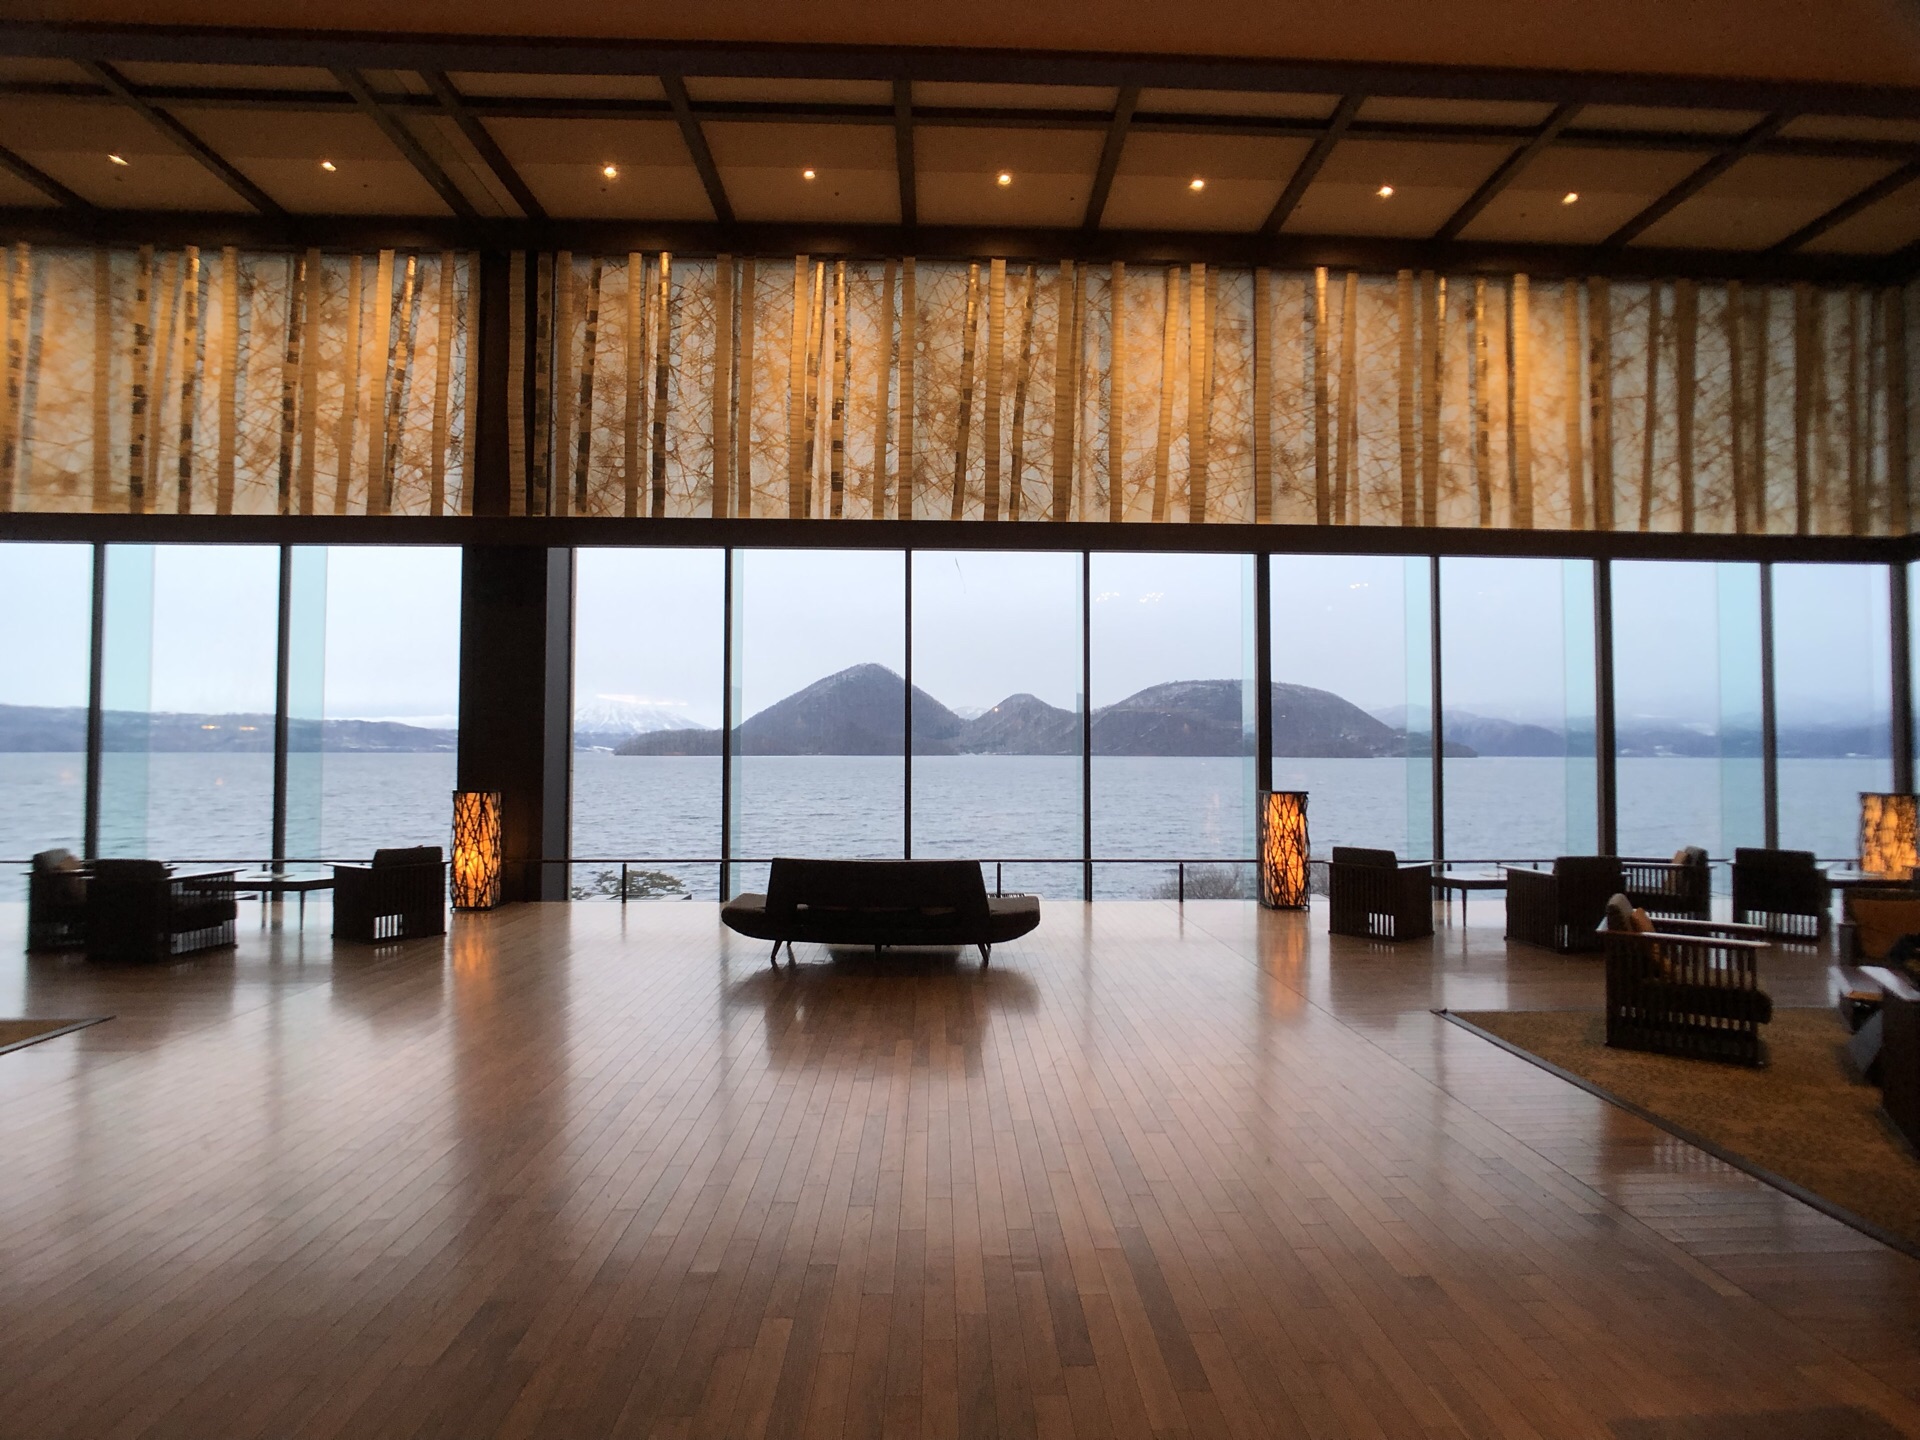 这趟北海道之行最期待的一家旅馆，大堂和餐厅都是非常宽广的落地玻璃让整个湖景一览无遗，房间和室外温泉也